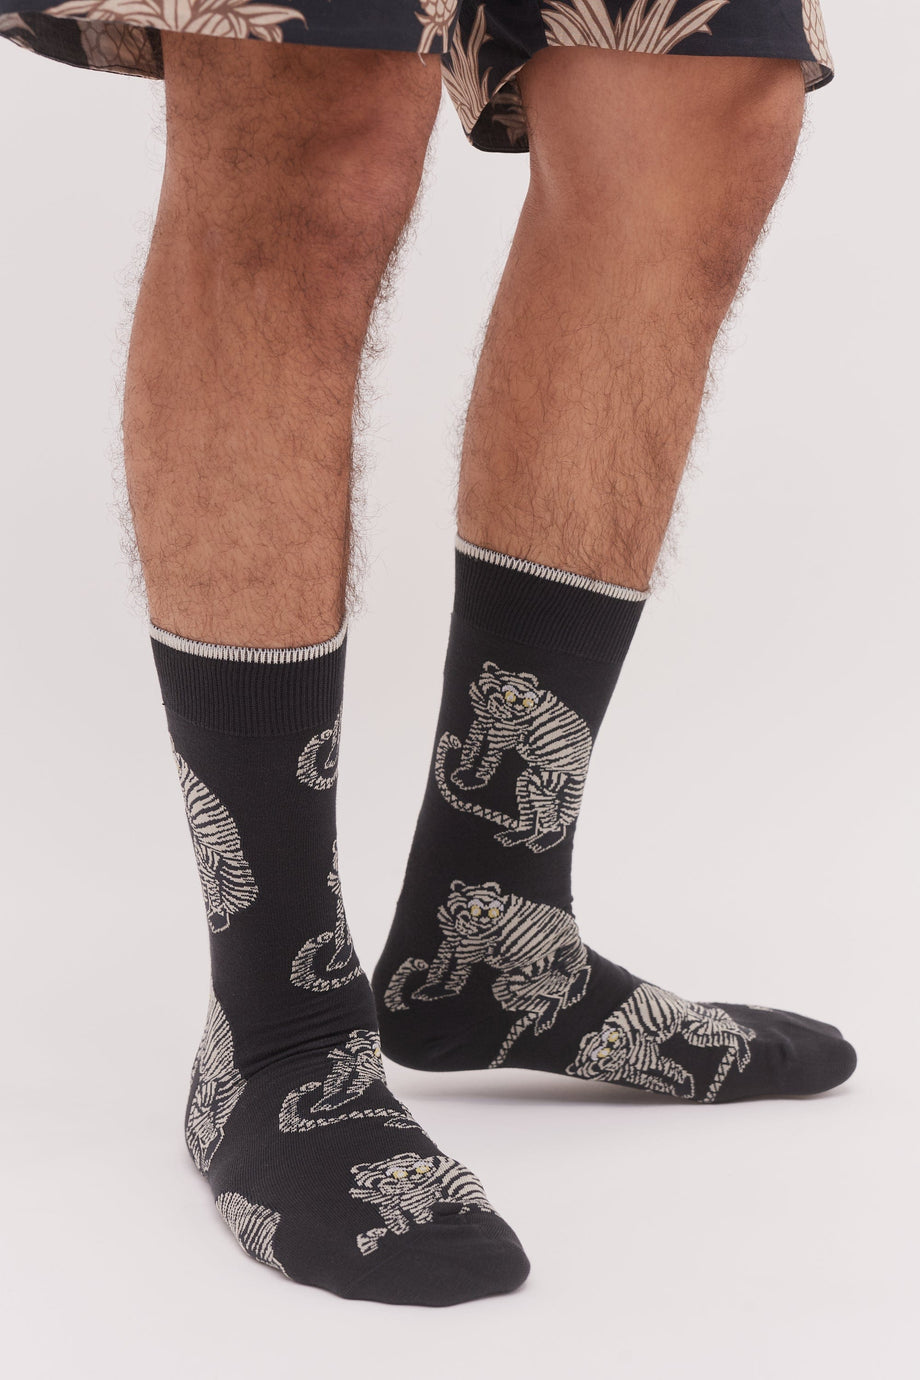 Men’s Socks Sansindo Tiger Print Black/Cream